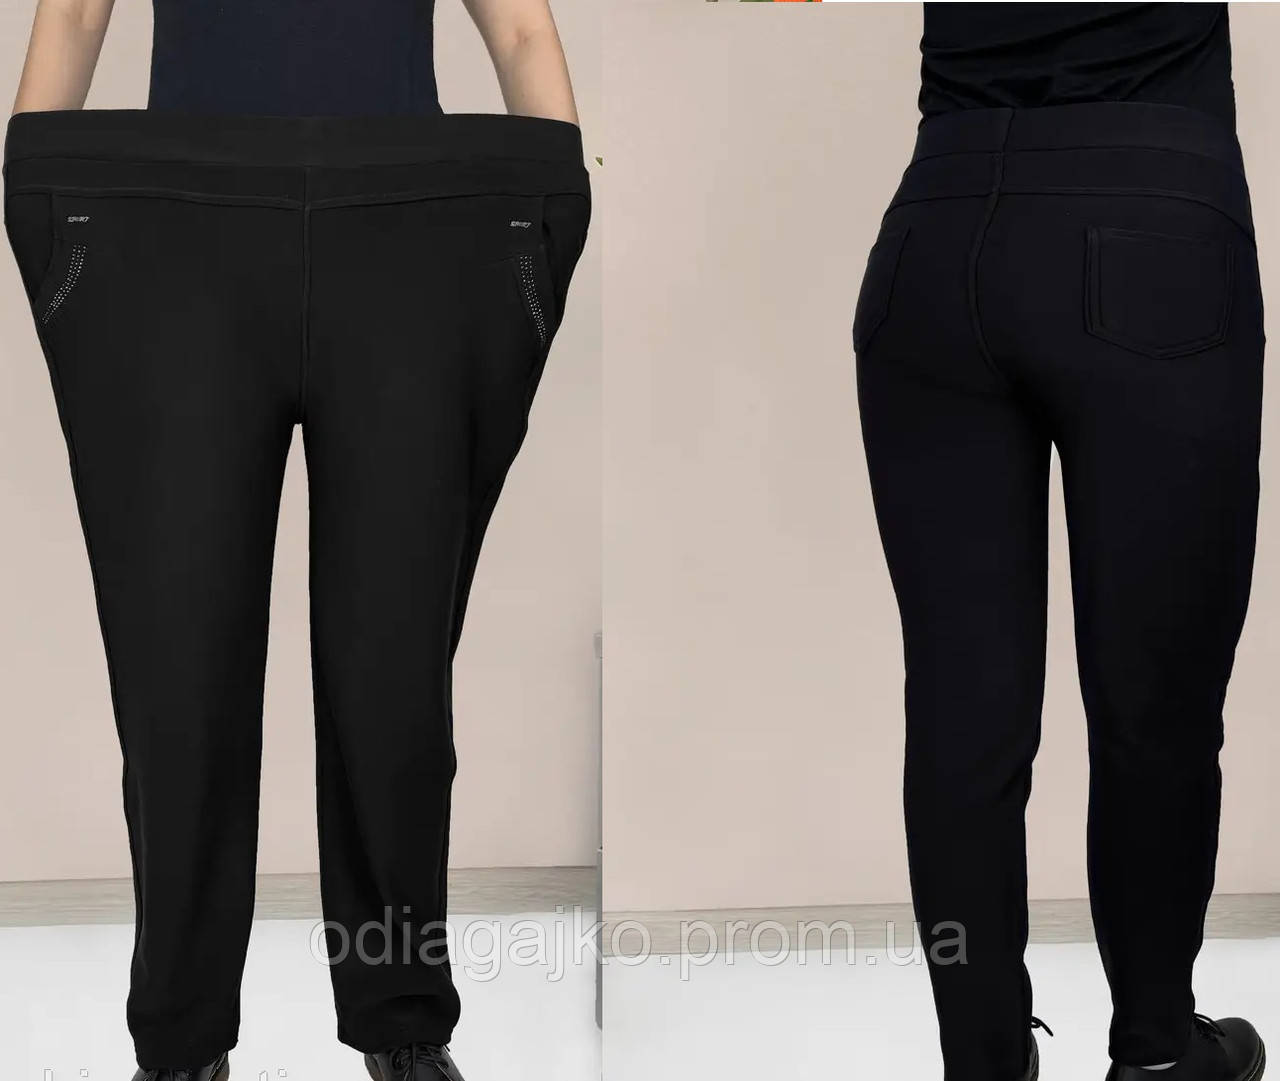 Жіночі штани ЗІМА на хутрі в чорному/синьому кольорах Батал 5XL,6XL,7XL Лосини теплі у великих розмірах Золото